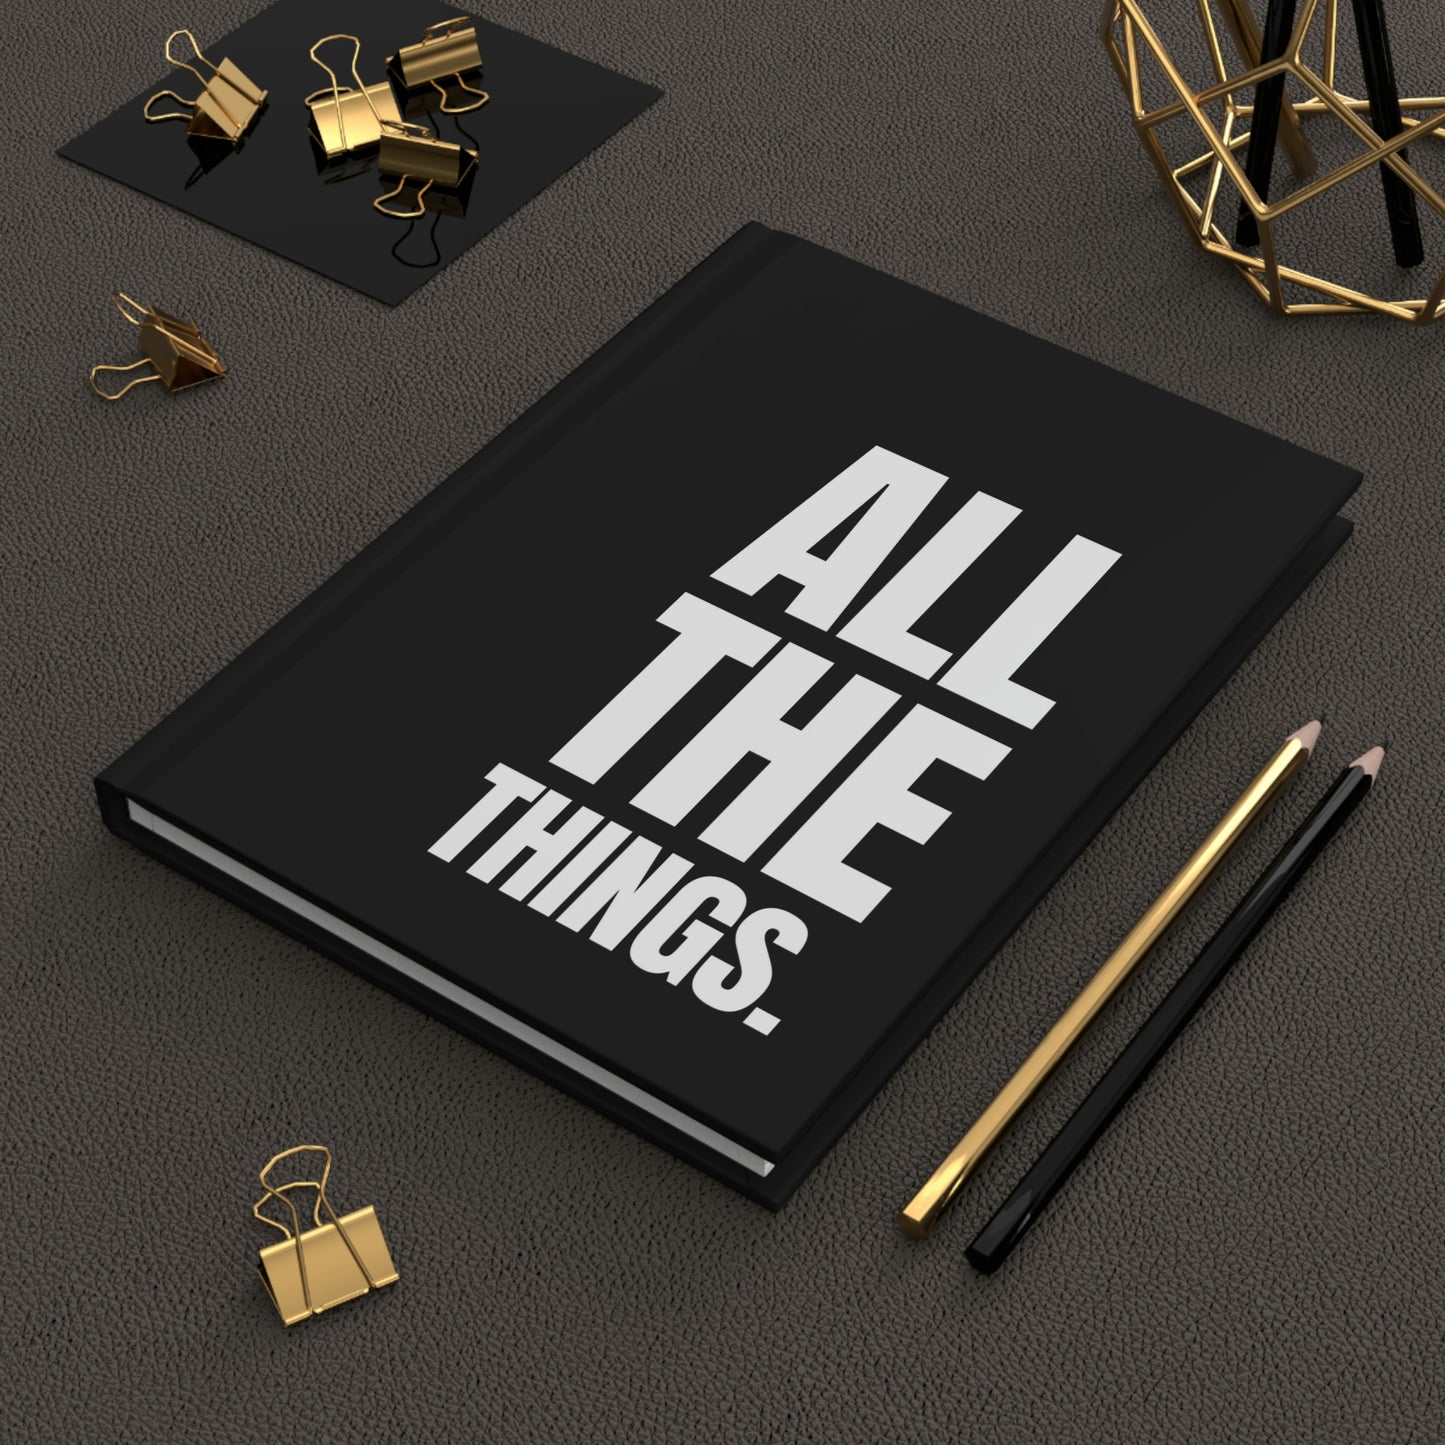 "All the Things" Velvety Matte Hardcover Journal